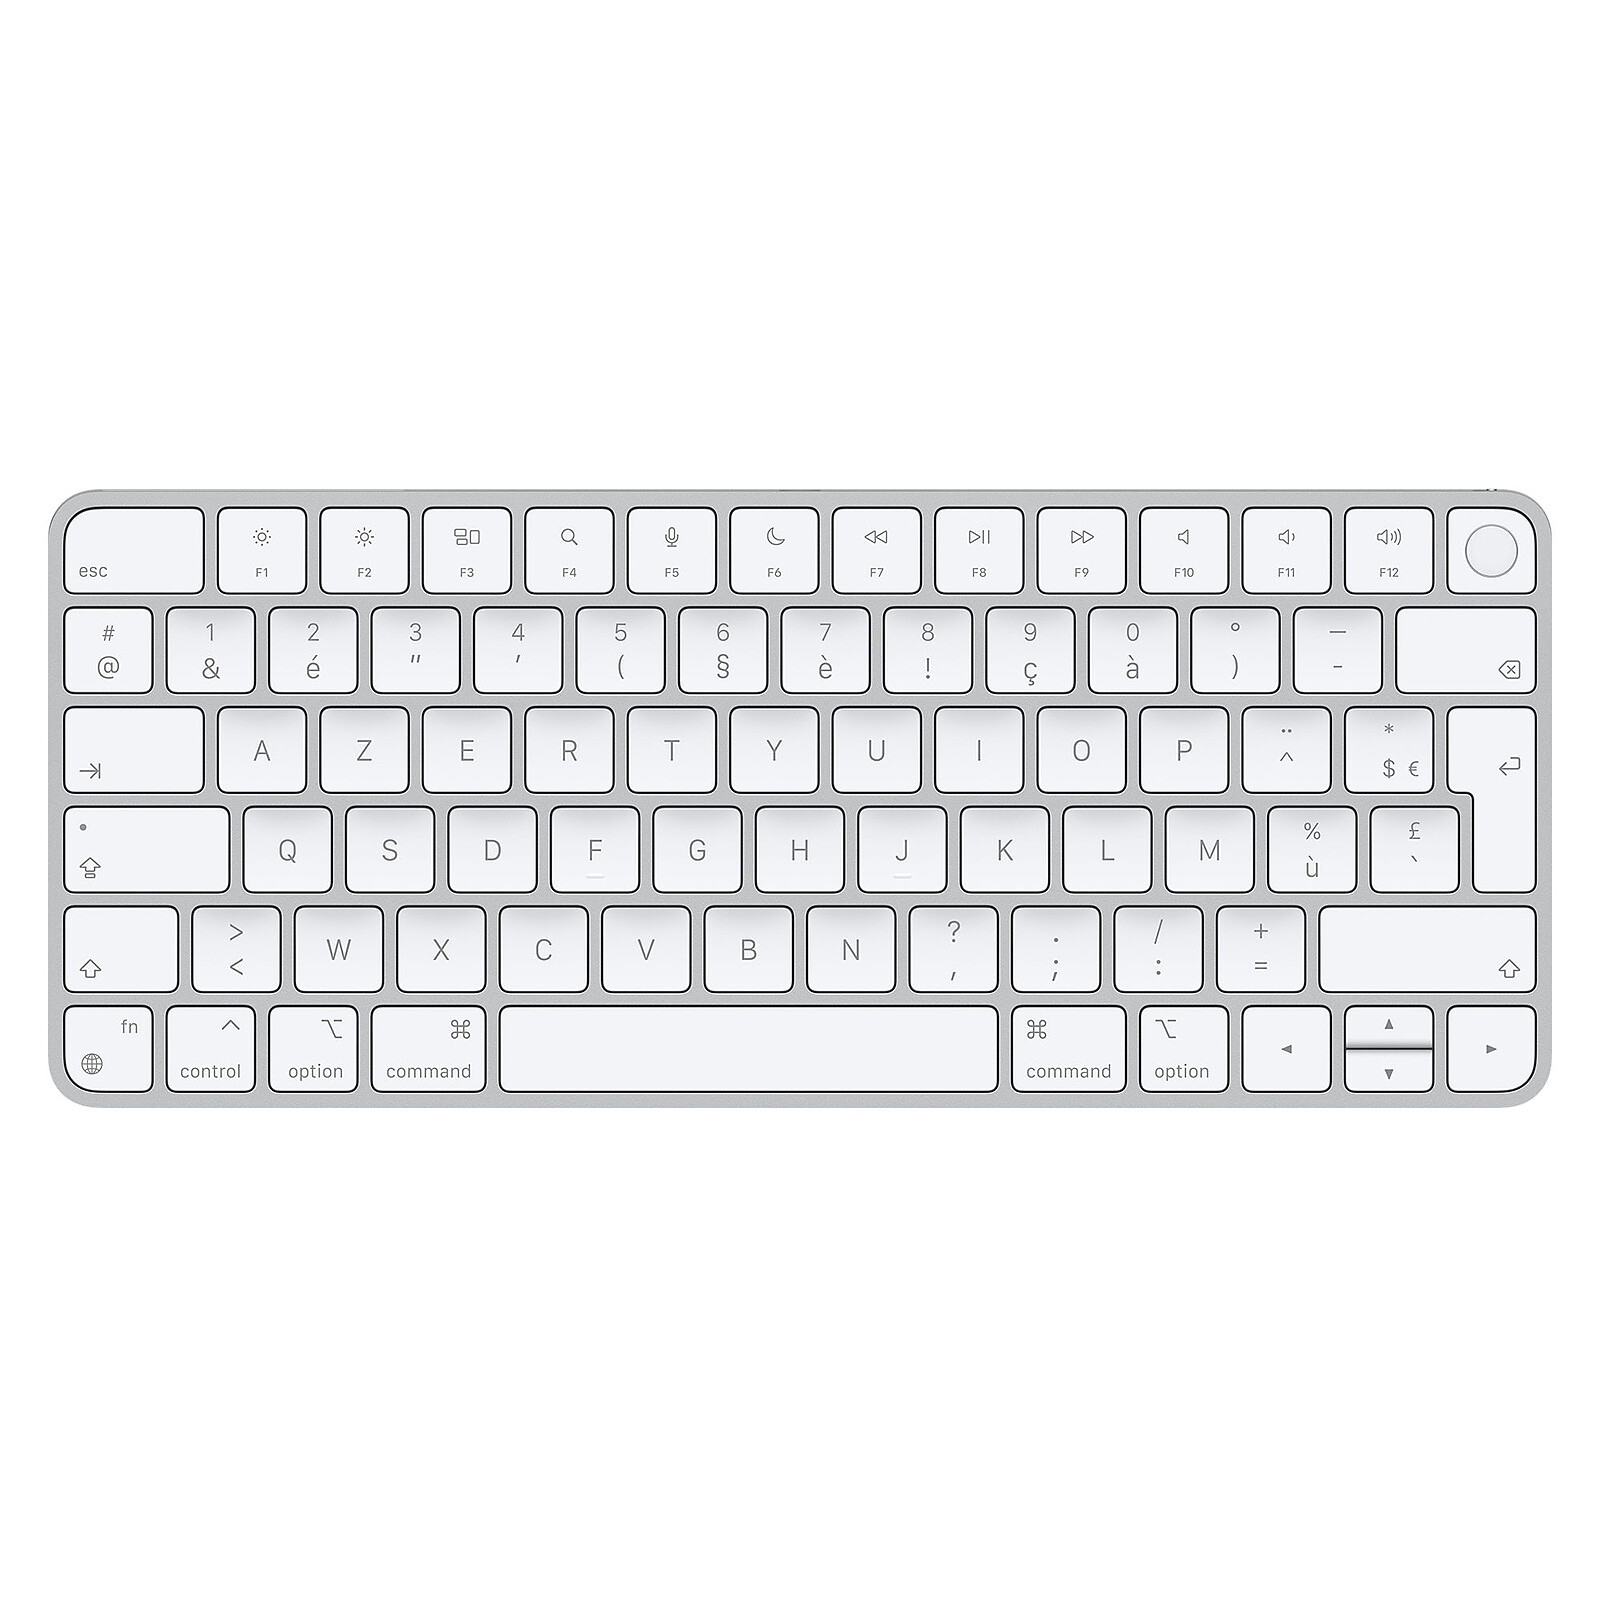 Test Magic Keyboard Touch ID : le clavier bureautique sans-fil d'Apple -  Les Numériques